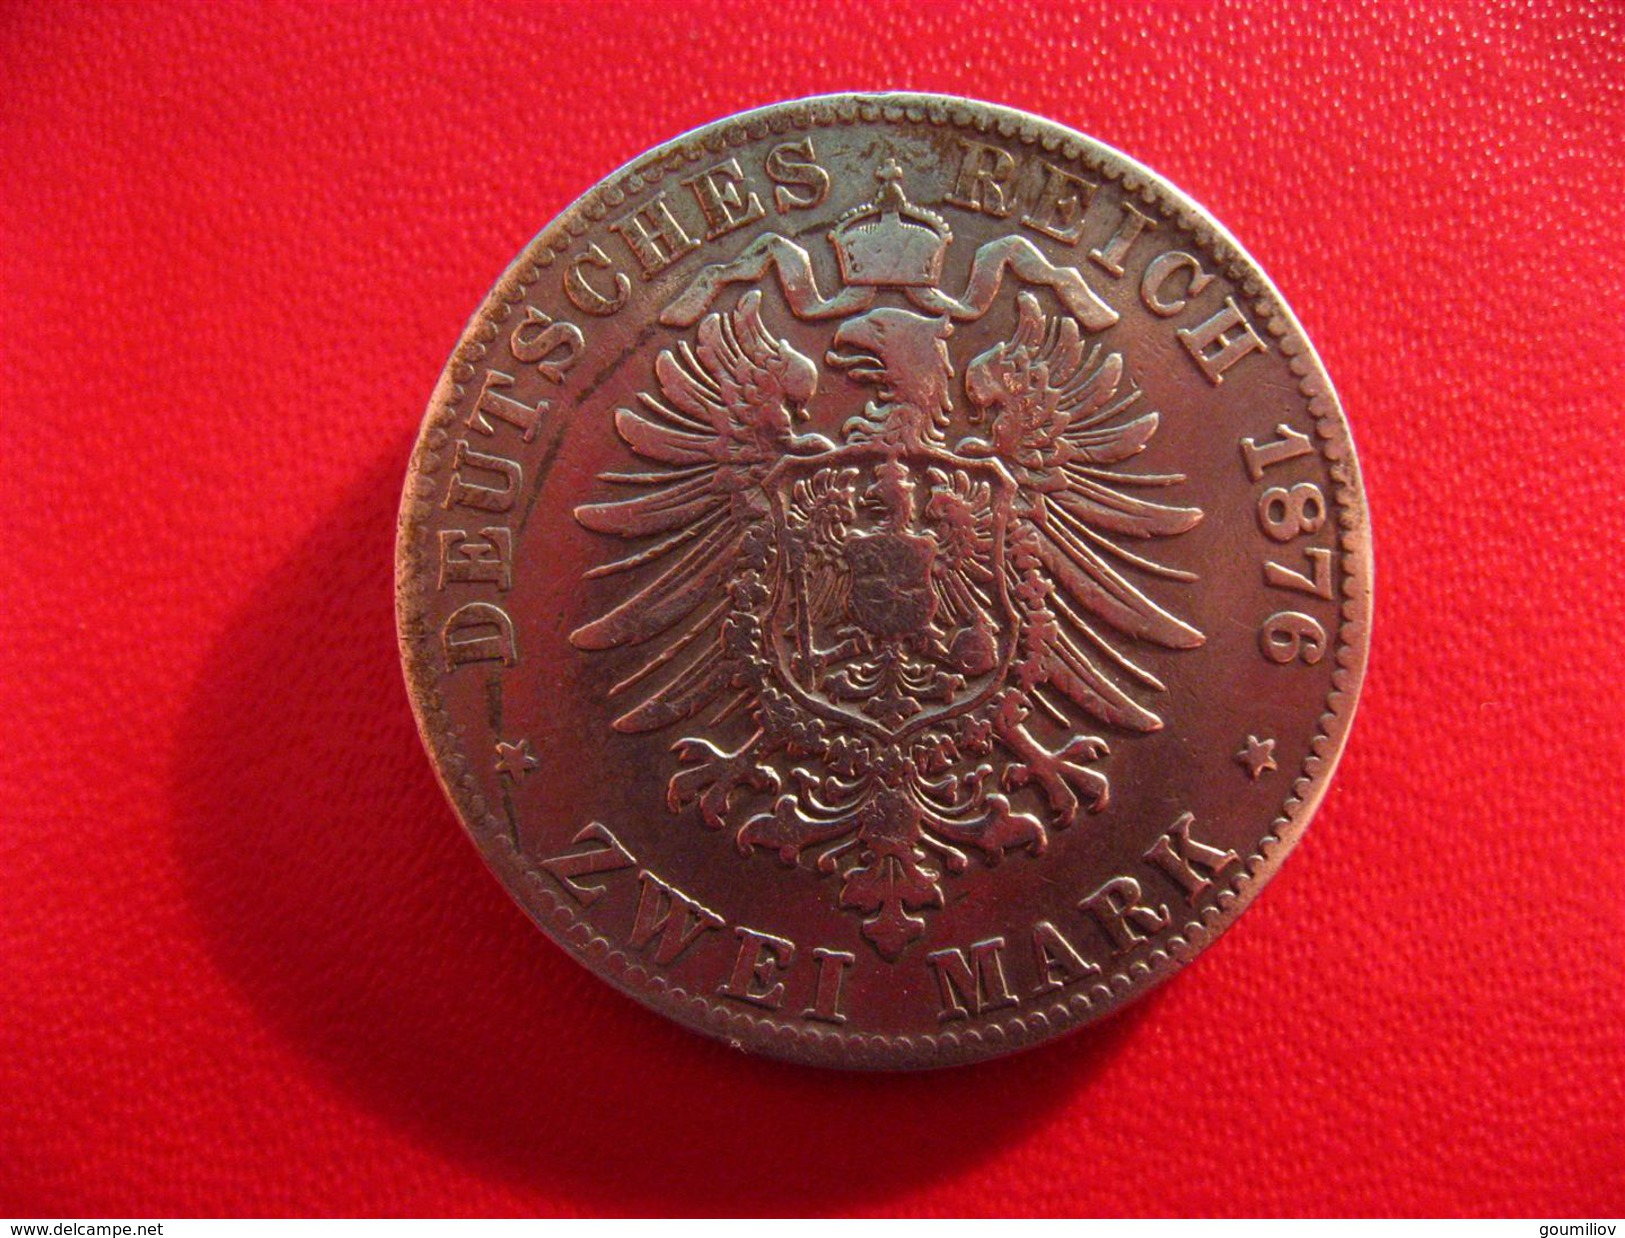 Allemagne - Prusse - 2 Zwei Mark 1876 C 6501 - 2, 3 & 5 Mark Silber